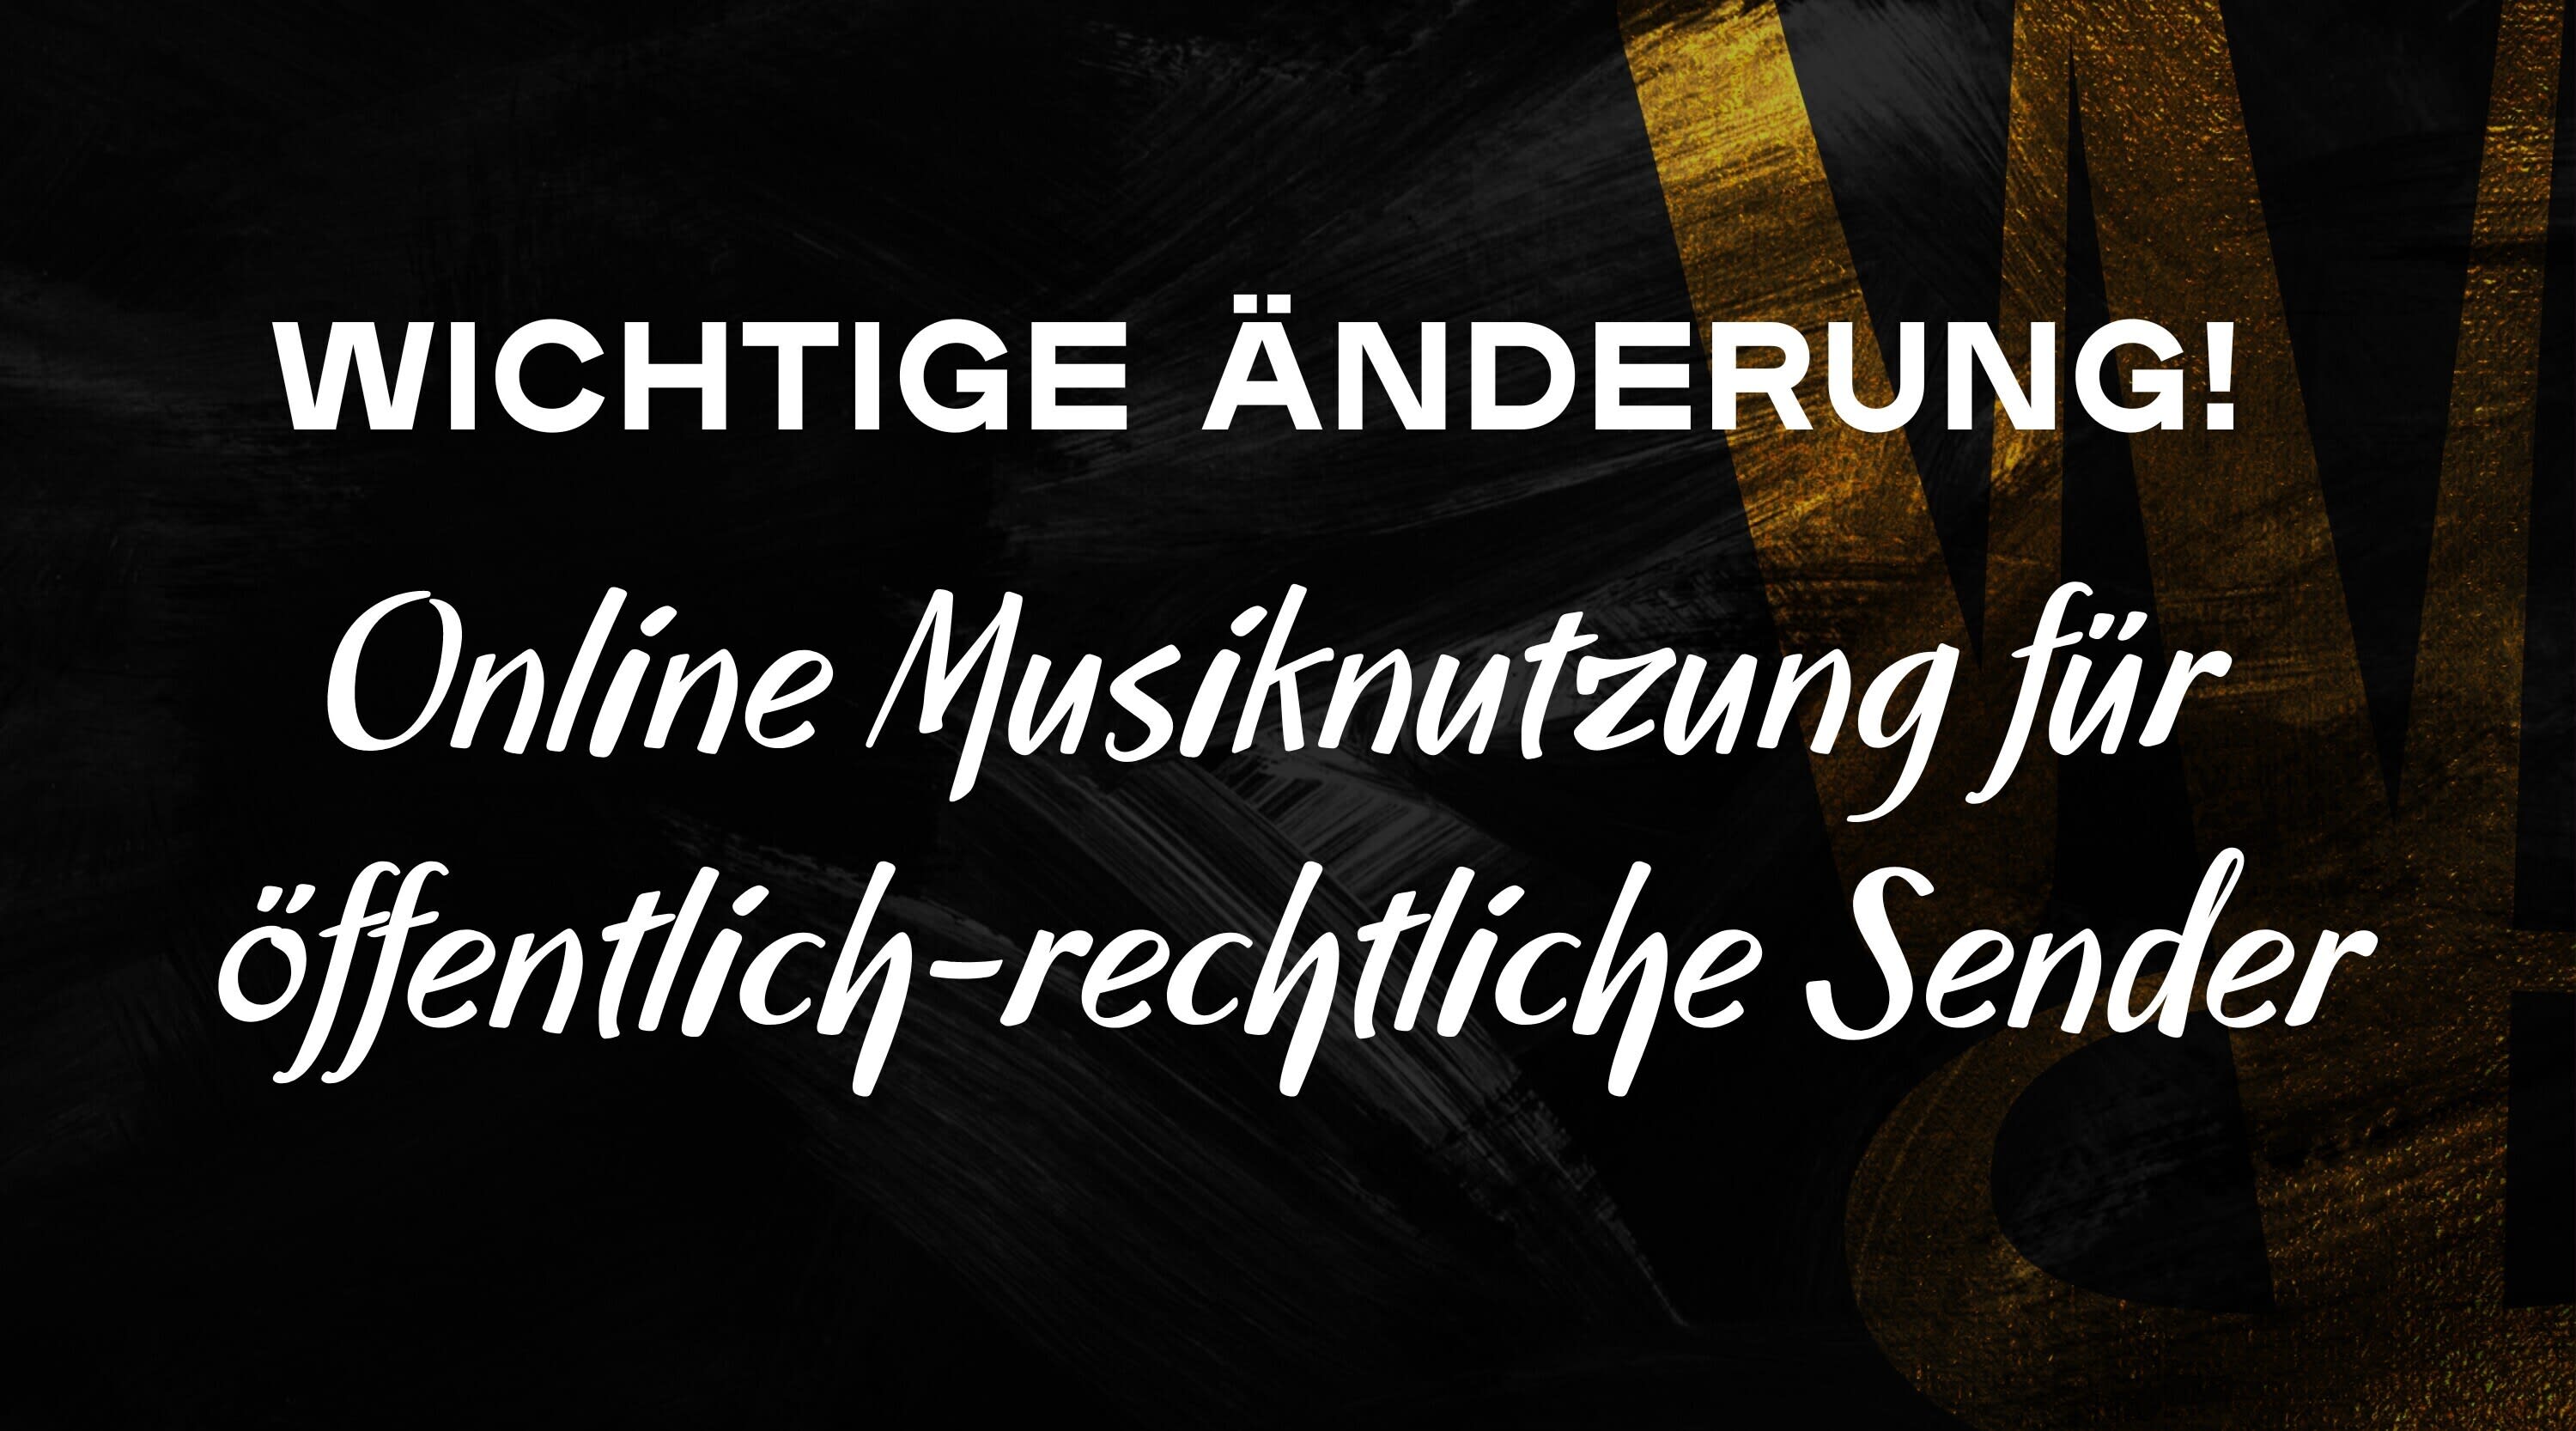 ARD Labelvereinbarung - Musiknutzung f&#252;r Online Only ab sofort m&#246;glich!